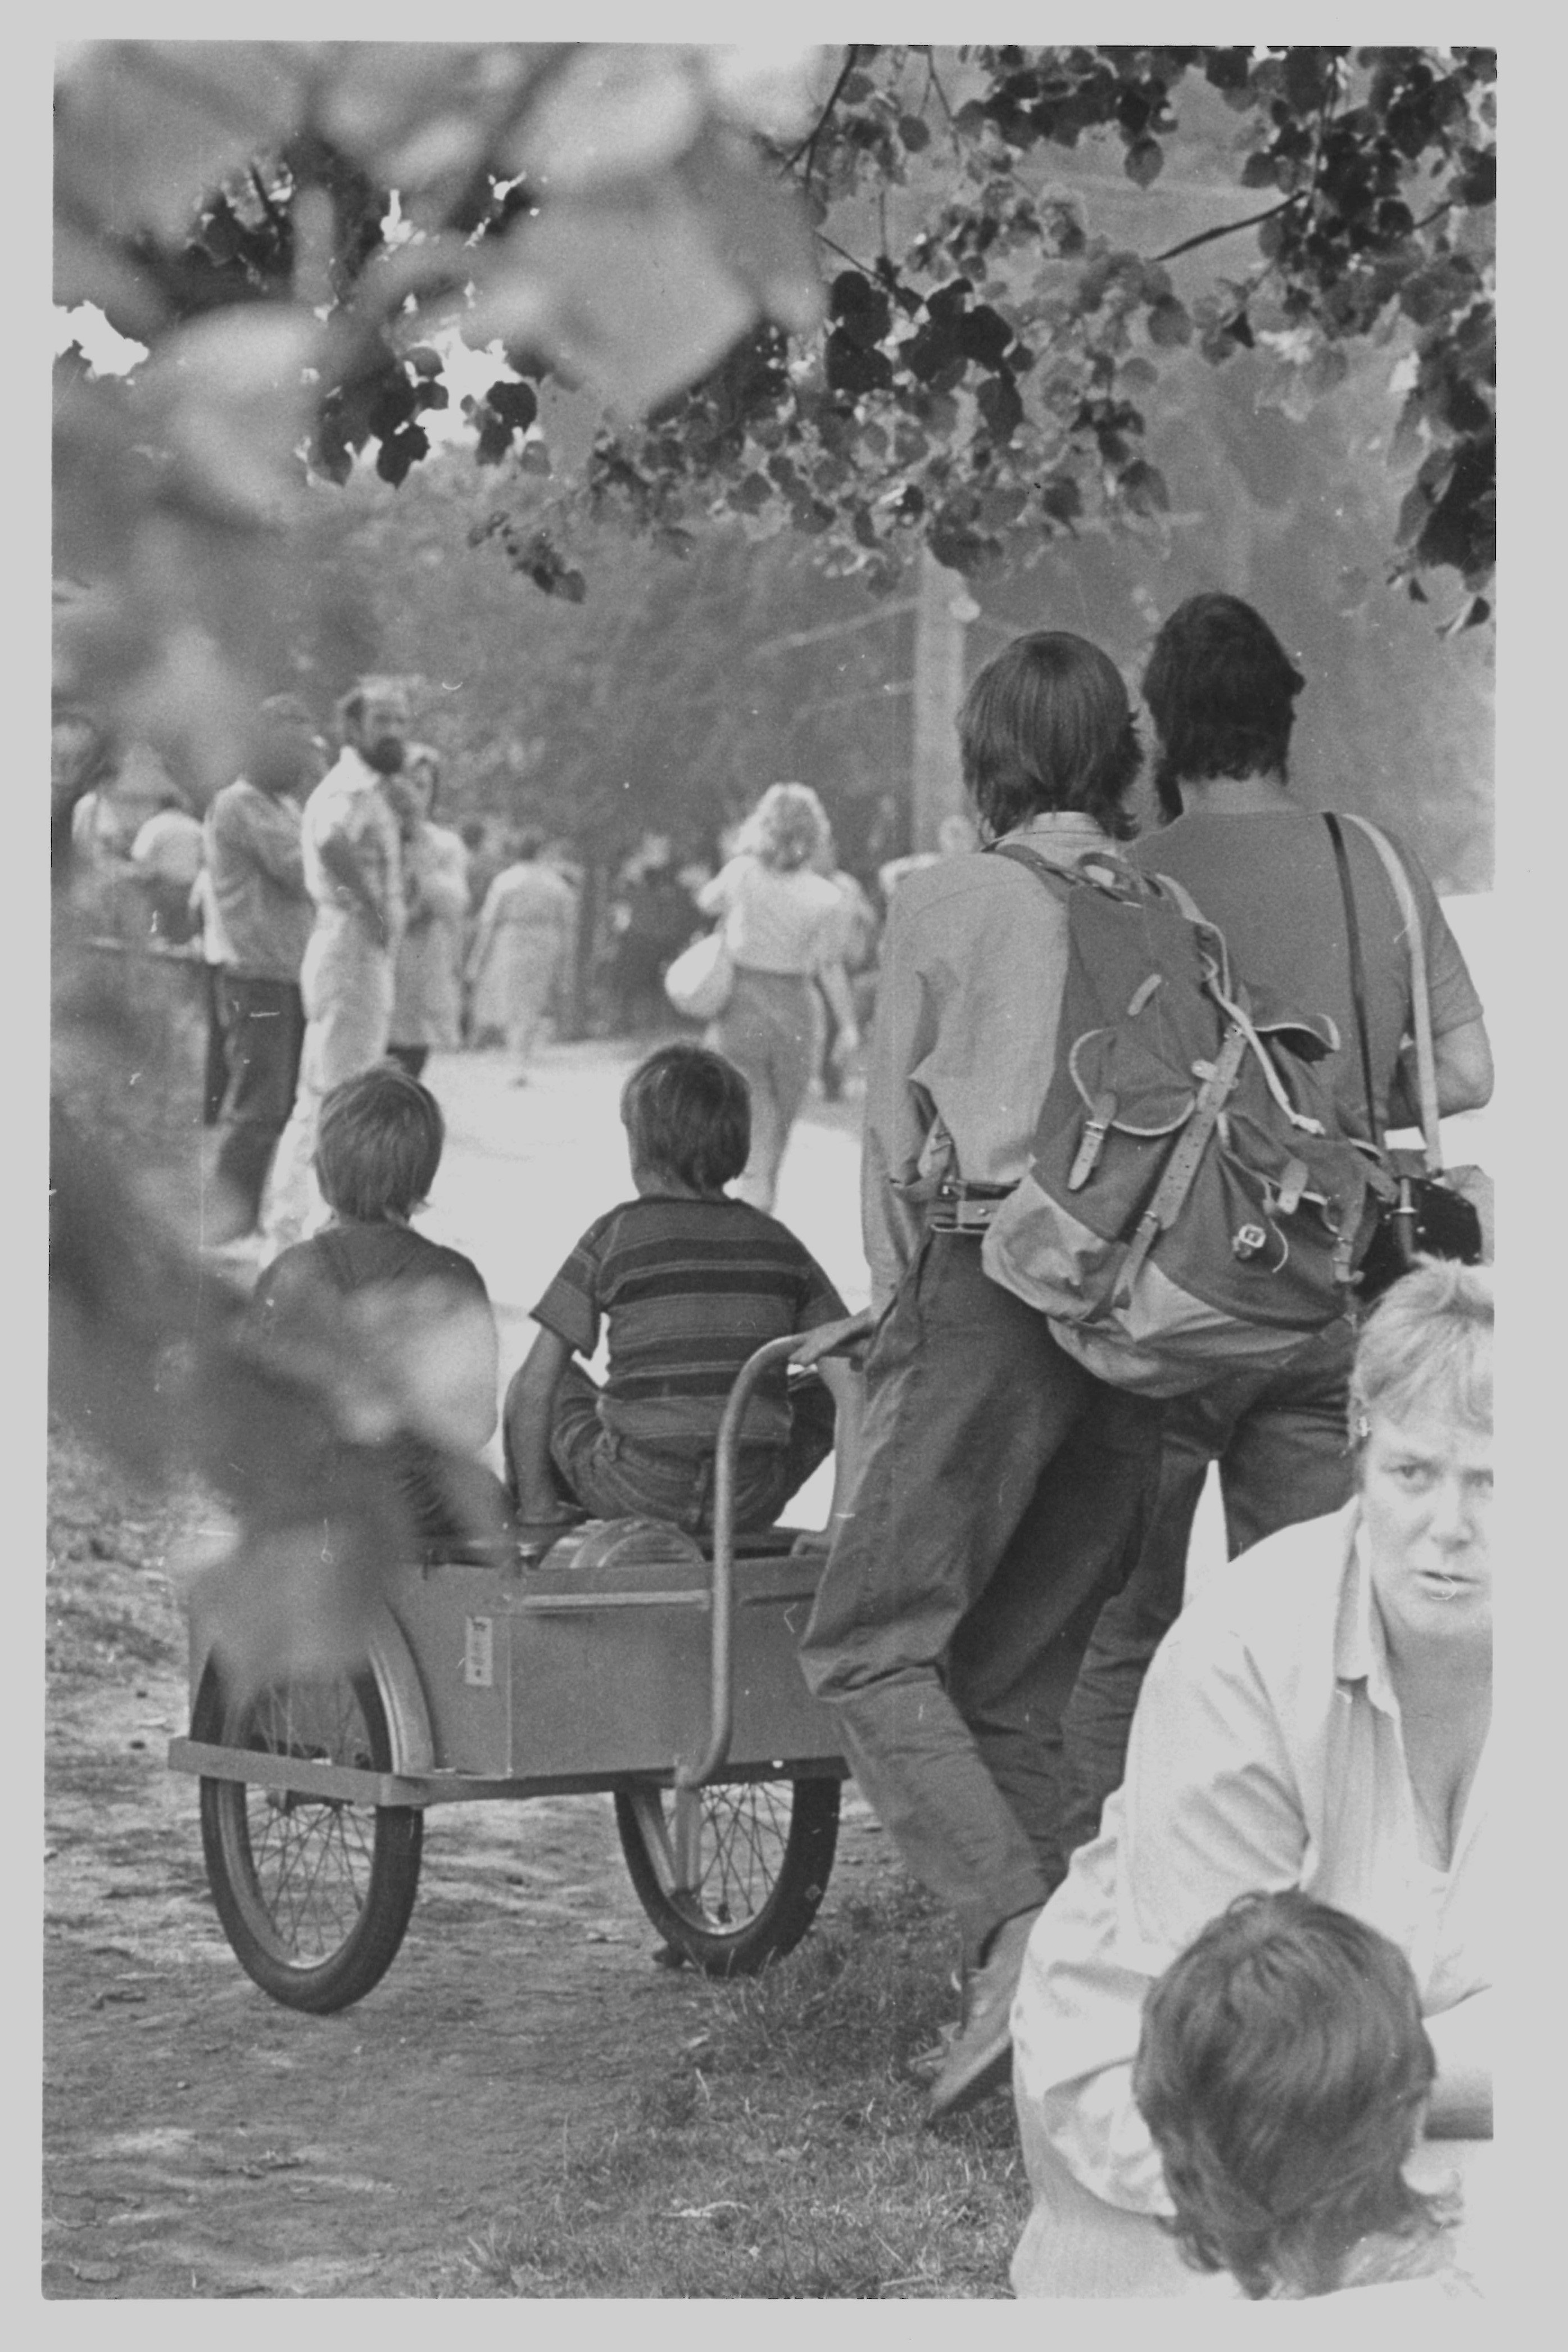 Olof-Palme-Marsch 1987: Kinder auf dem Bollerwagen der Freimarks (DDR Geschichtsmuseum im Dokumentationszentrum Perleberg CC BY-SA)